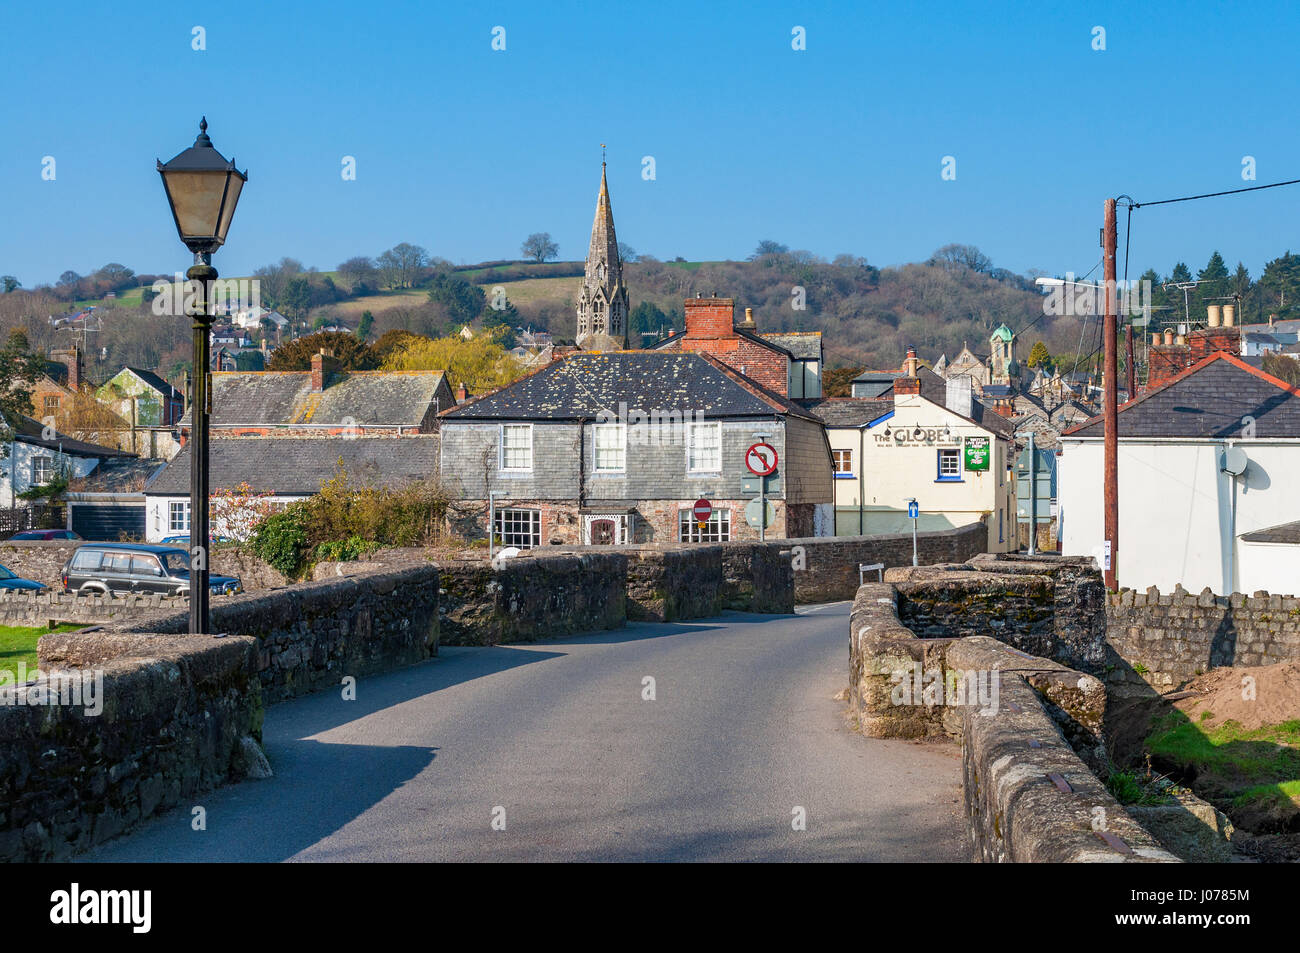 Die historische Stadt Lostwithiel in Cornwall, England, Großbritannien, UK > Stockfoto